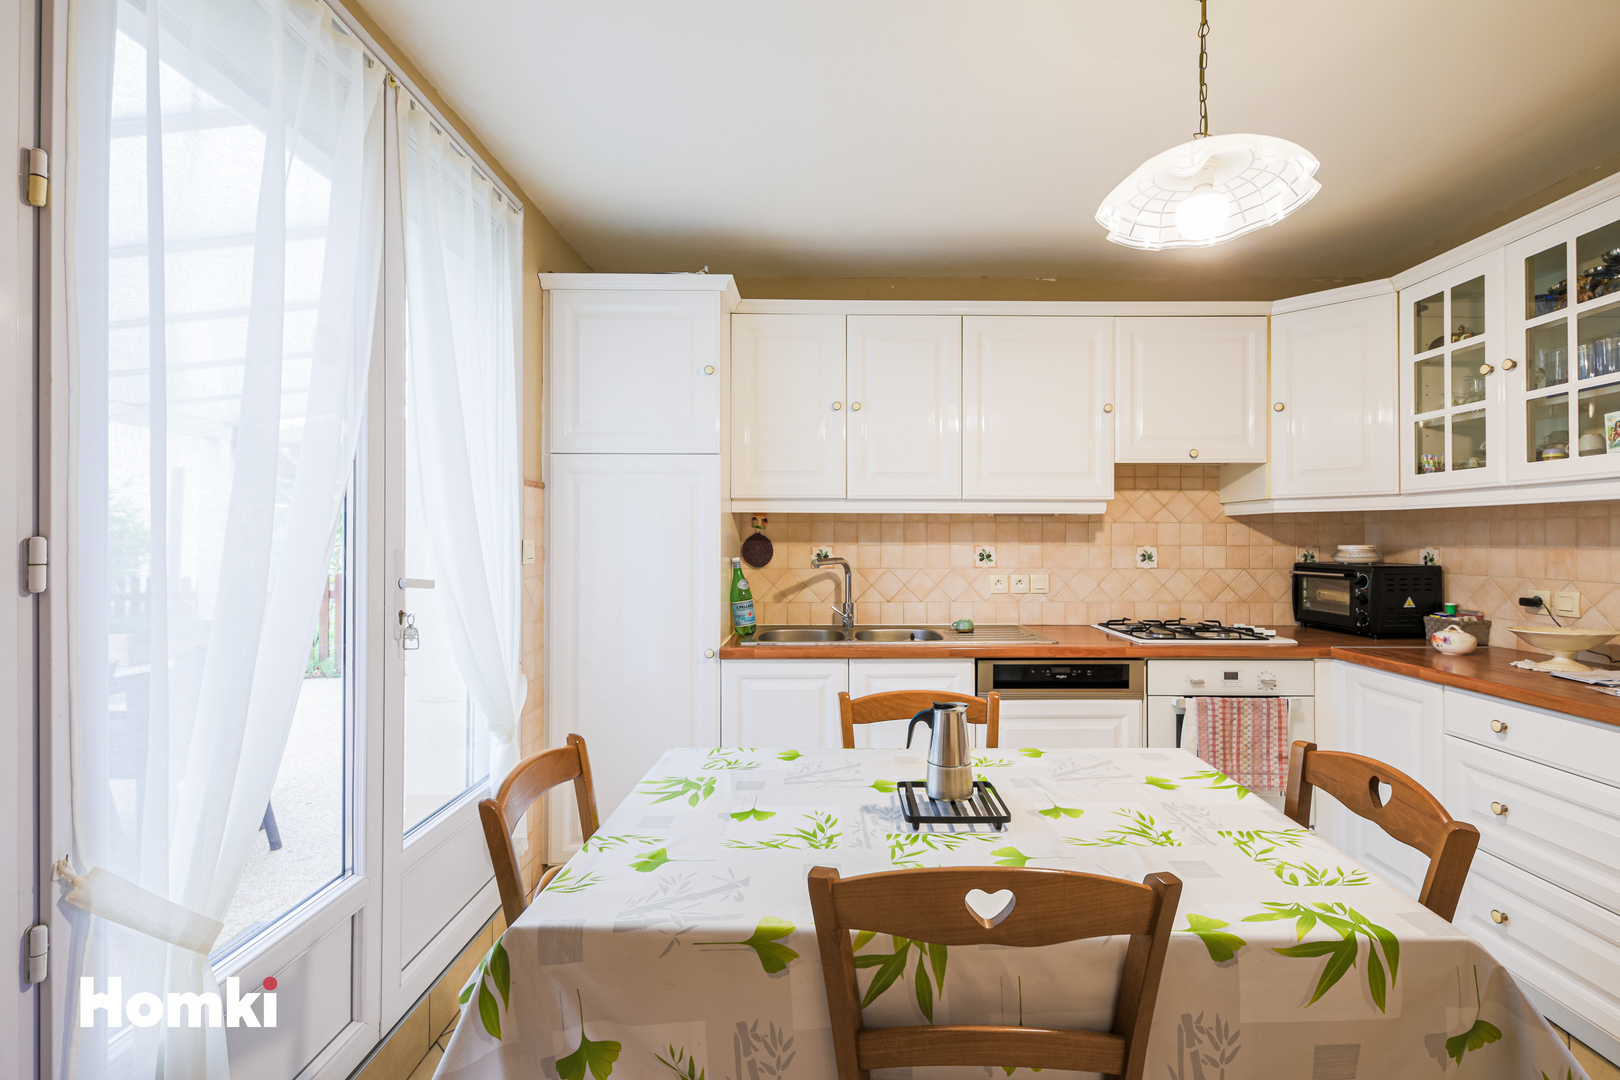 Homki - Vente Maison/villa  de 95.0 m² à Saint-Martin-d'Hères 38400